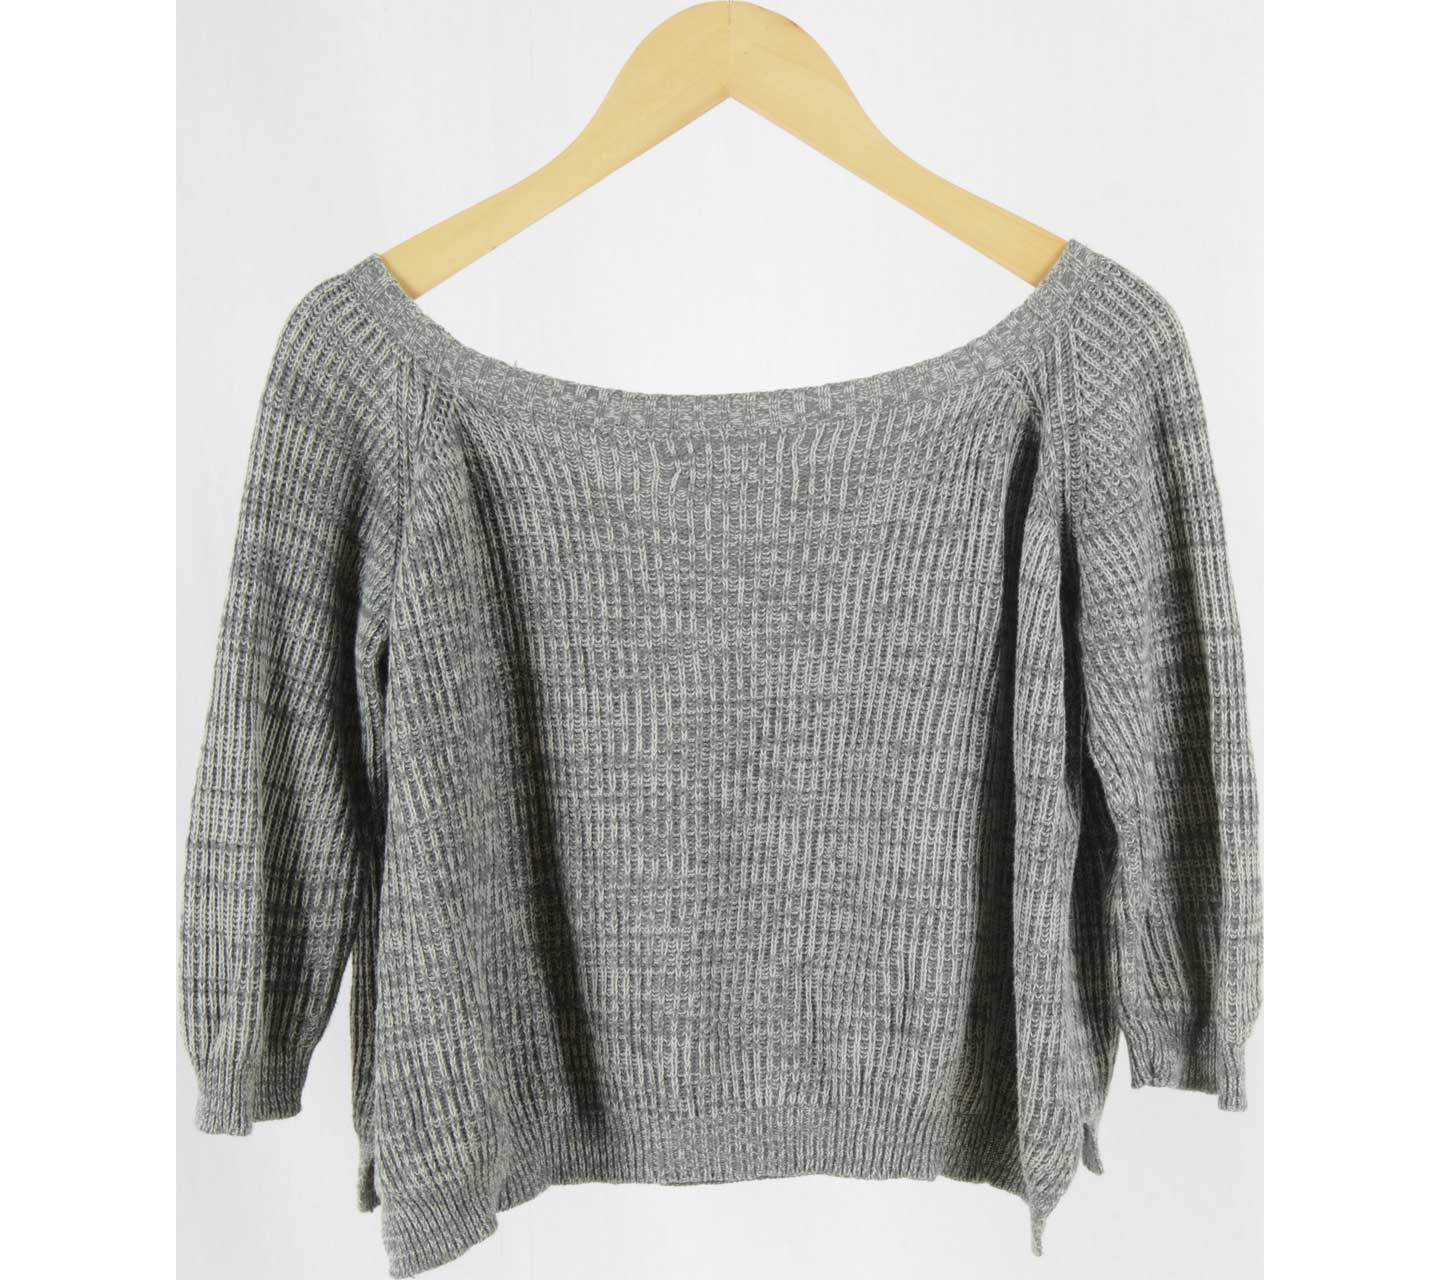 Soep Shop Grey Knit Sweater